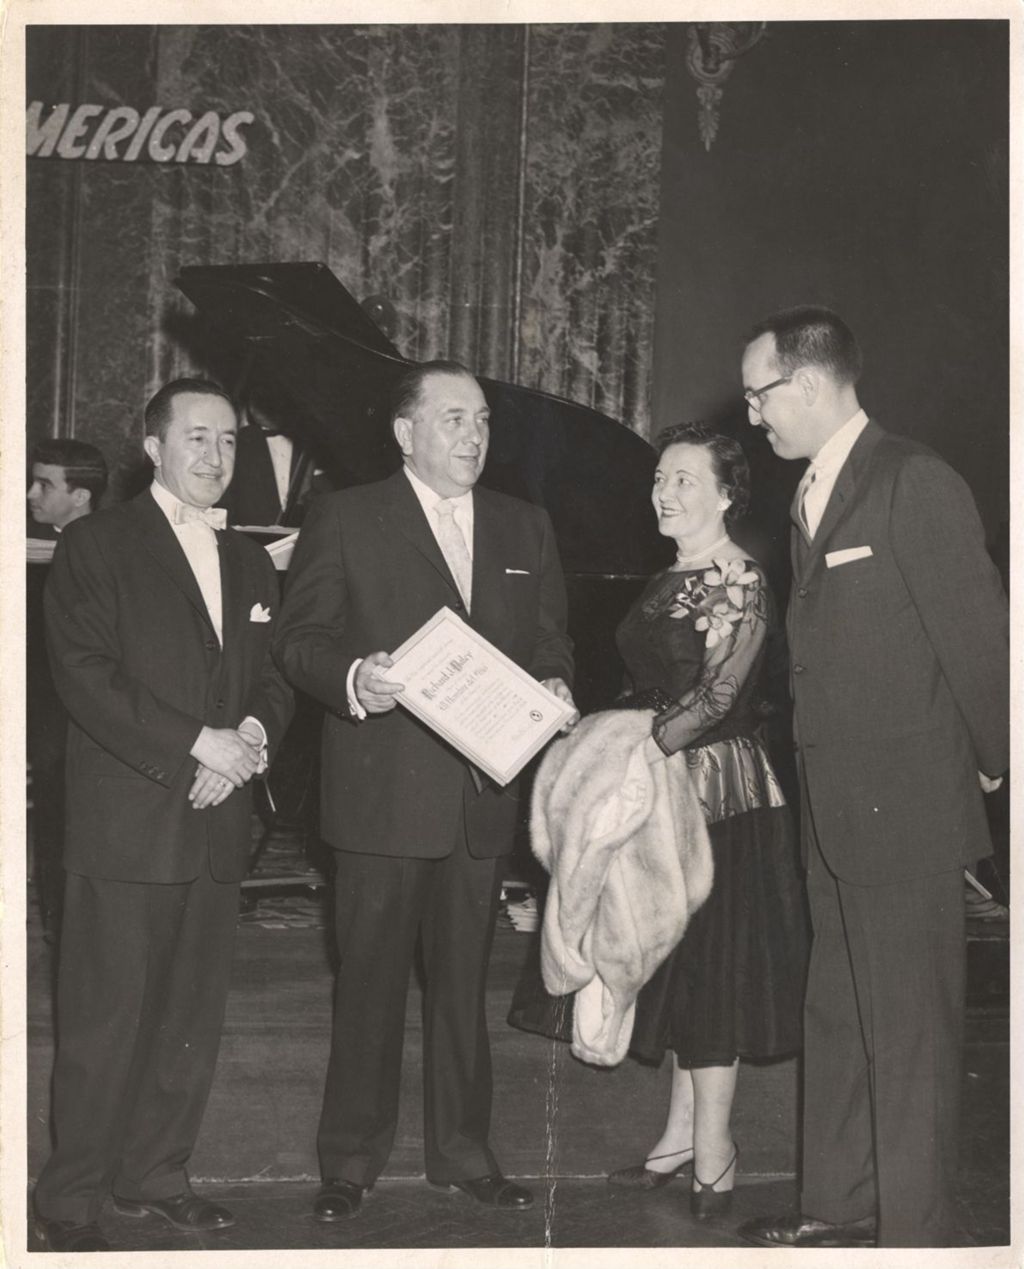 Richard J. and Eleanor Daley with "El Hombre del Año" award